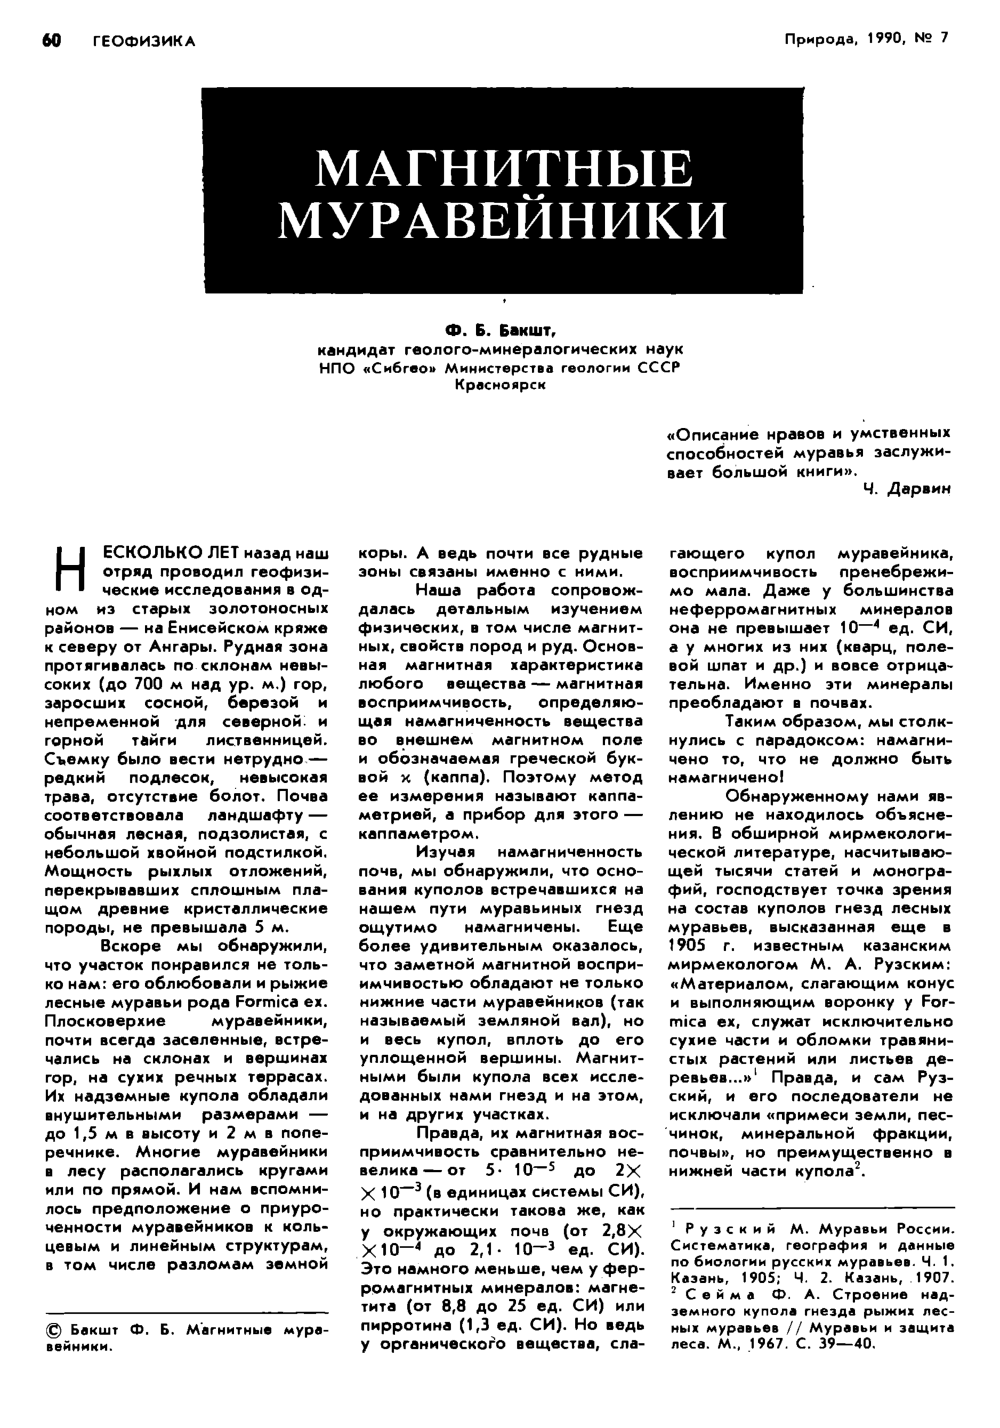 Магнитные муравейники. Ф. Б. Бакшт. Природа, 1990, №7, с.60-63. Фотокопия №1